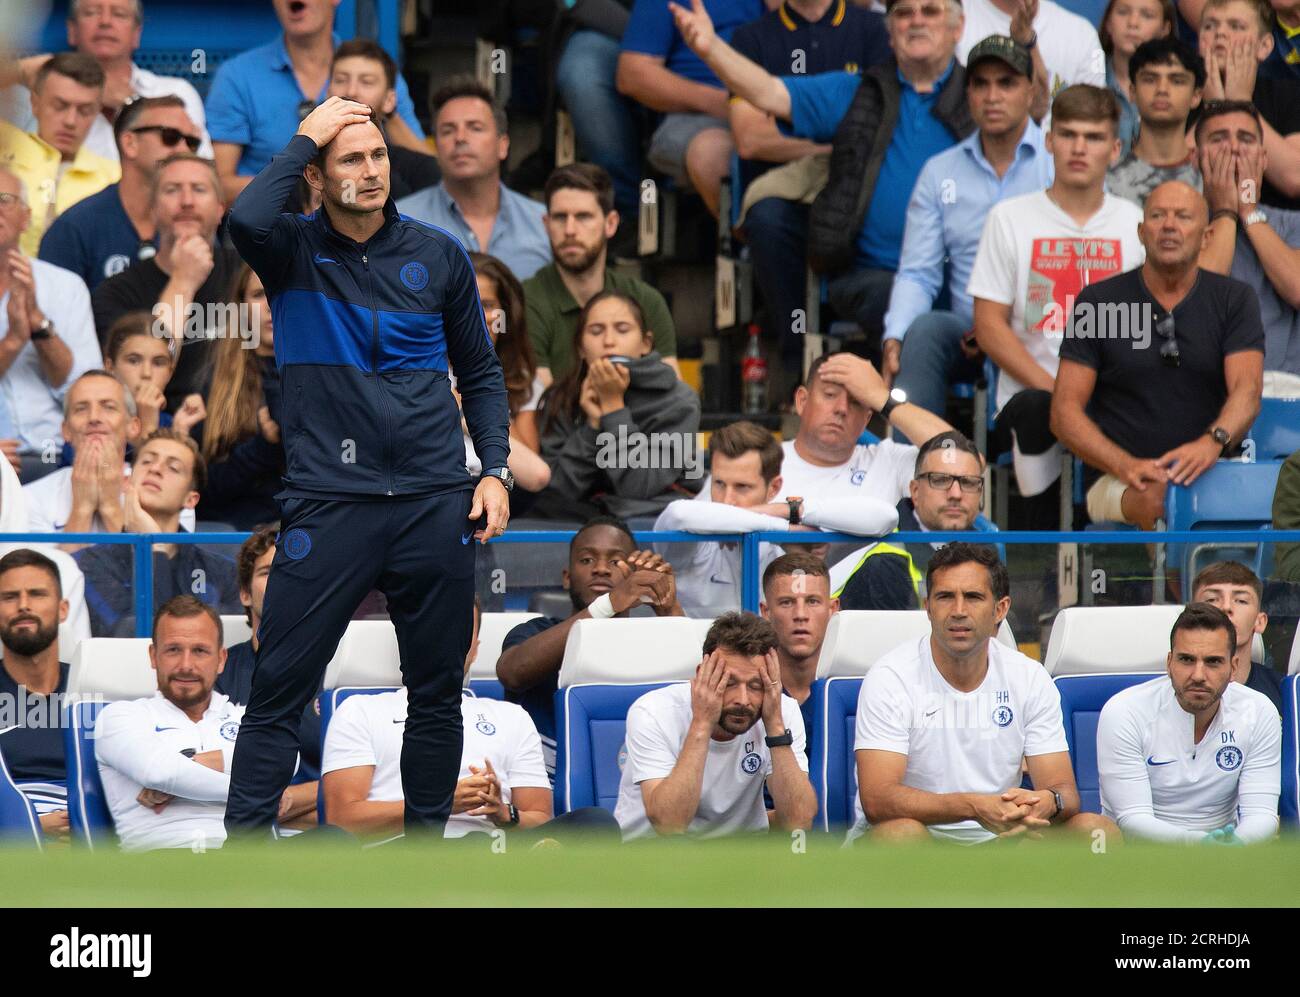 Frank Lampard - responsable de Chelsea. Chelsea et Sheffield Utd. Première ligue. CRÉDIT PHOTO : © MARK PAIN / IMAGE DE STOCK D'ALAMY Banque D'Images